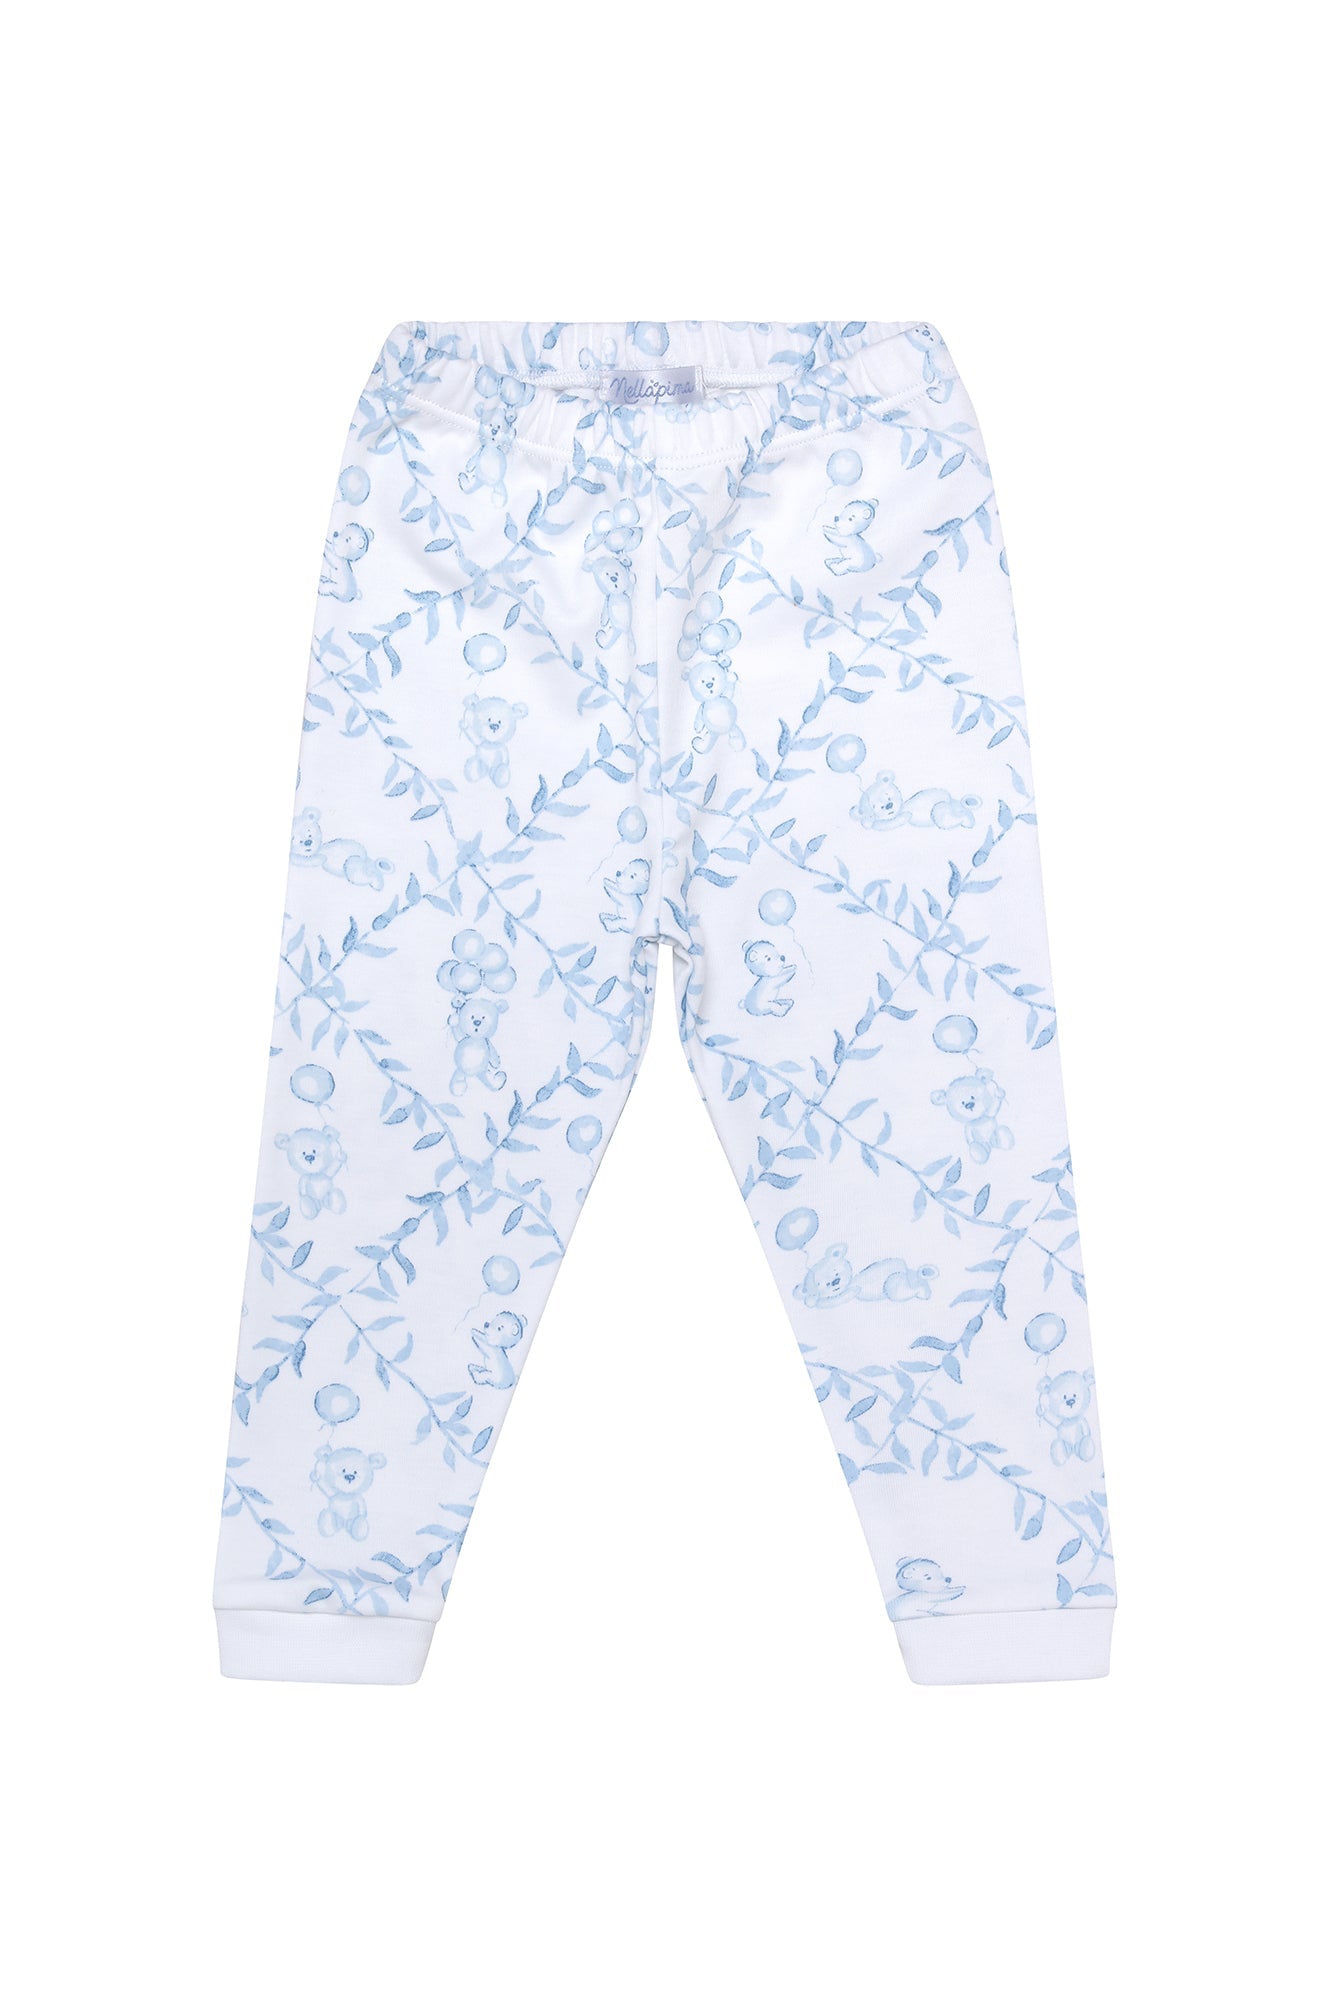 Boys Blue Bears Trellace Pajamas 